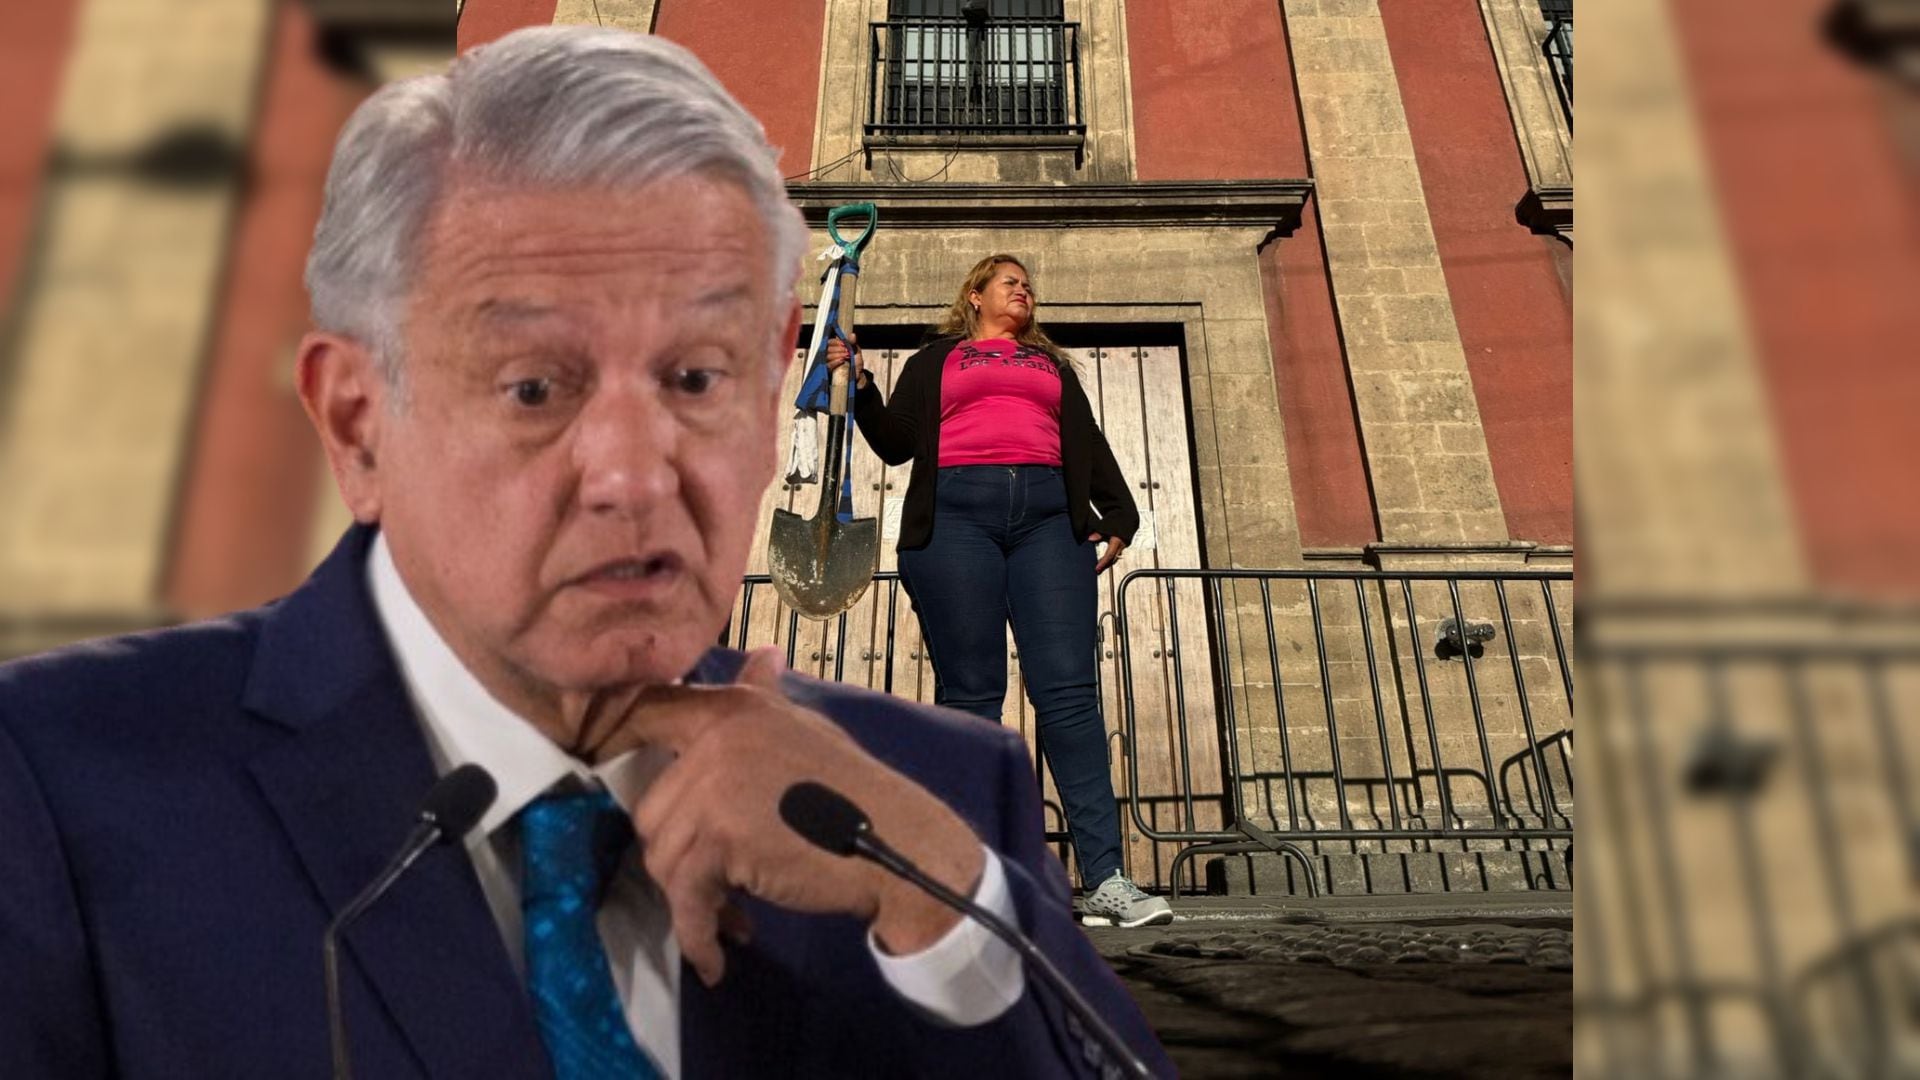 La madre buscadora Ceci Flores esperó a AMLO afuera de Palacio Nacional con la pala con la que busca a su hijo.